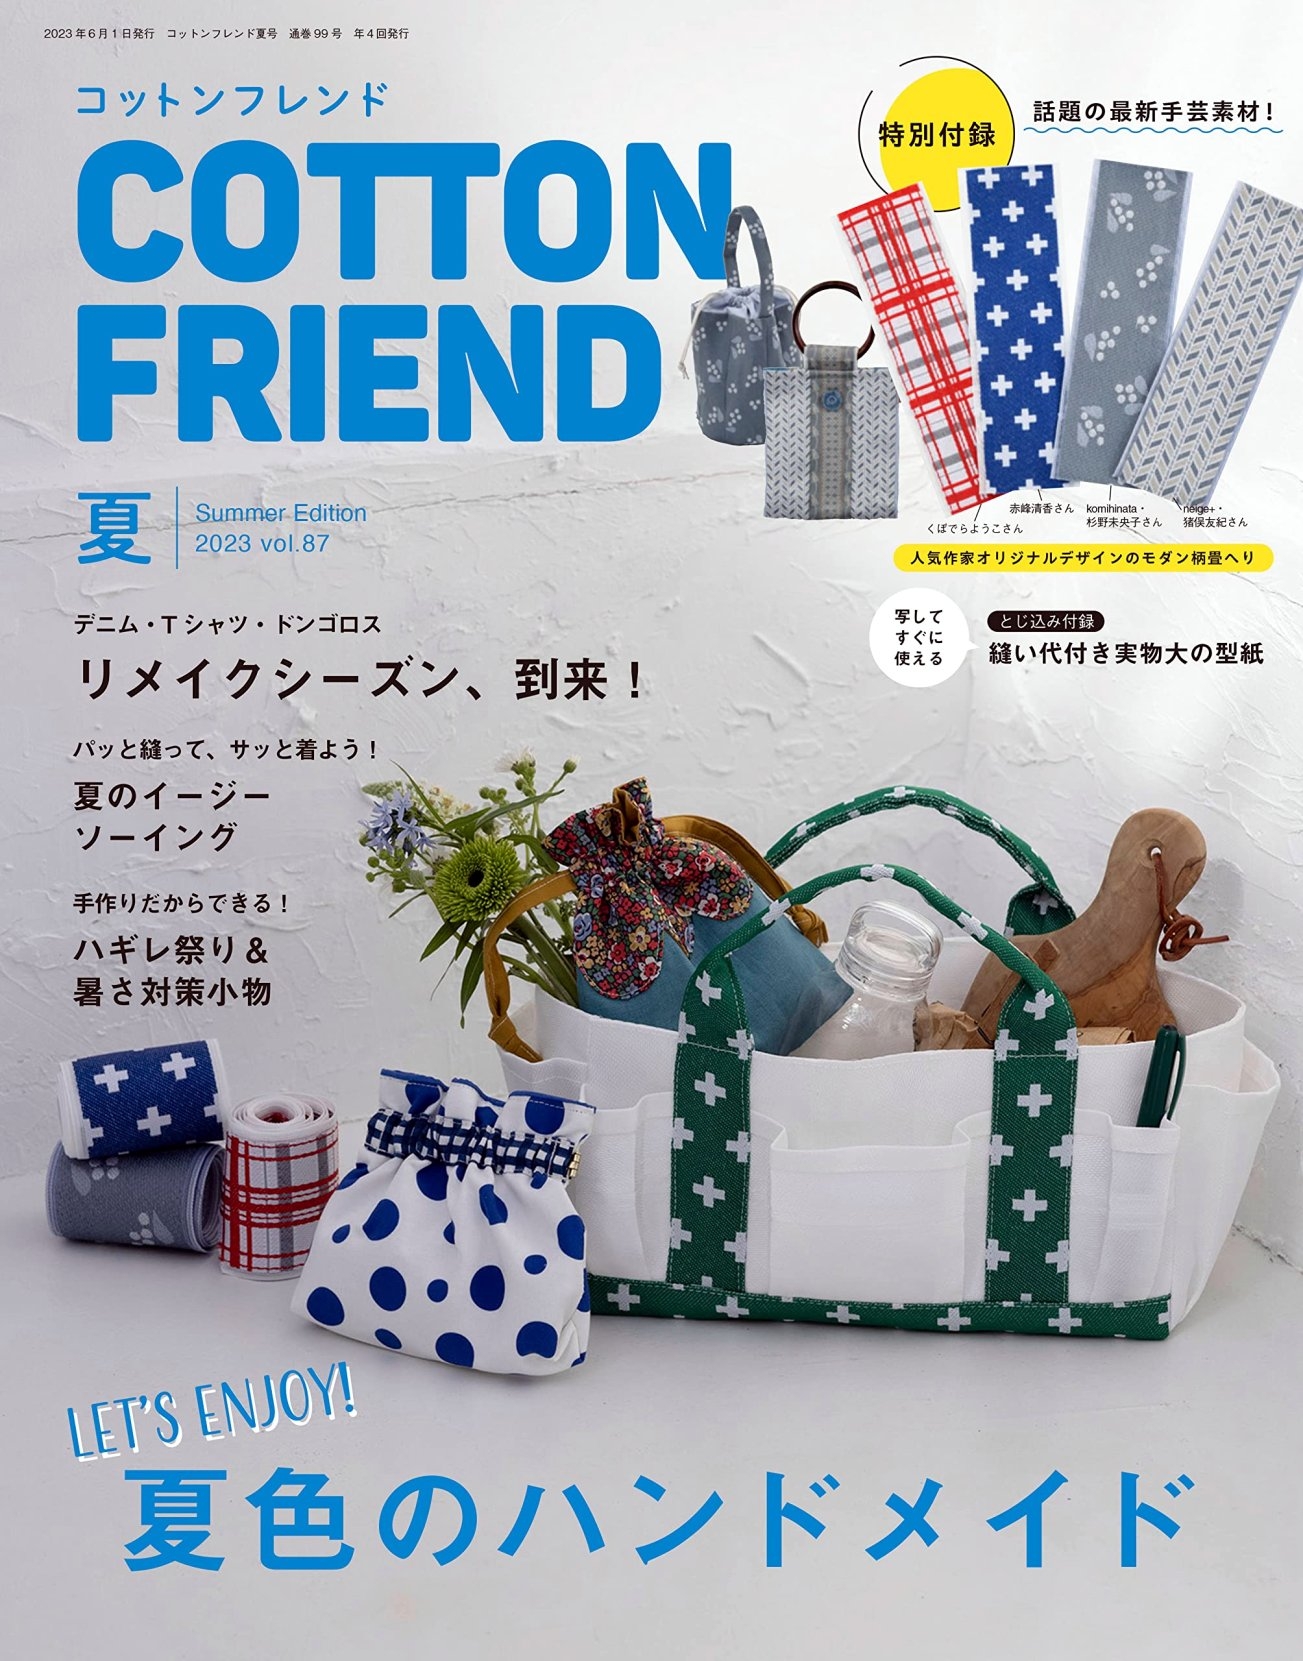 Cotton friend 7...